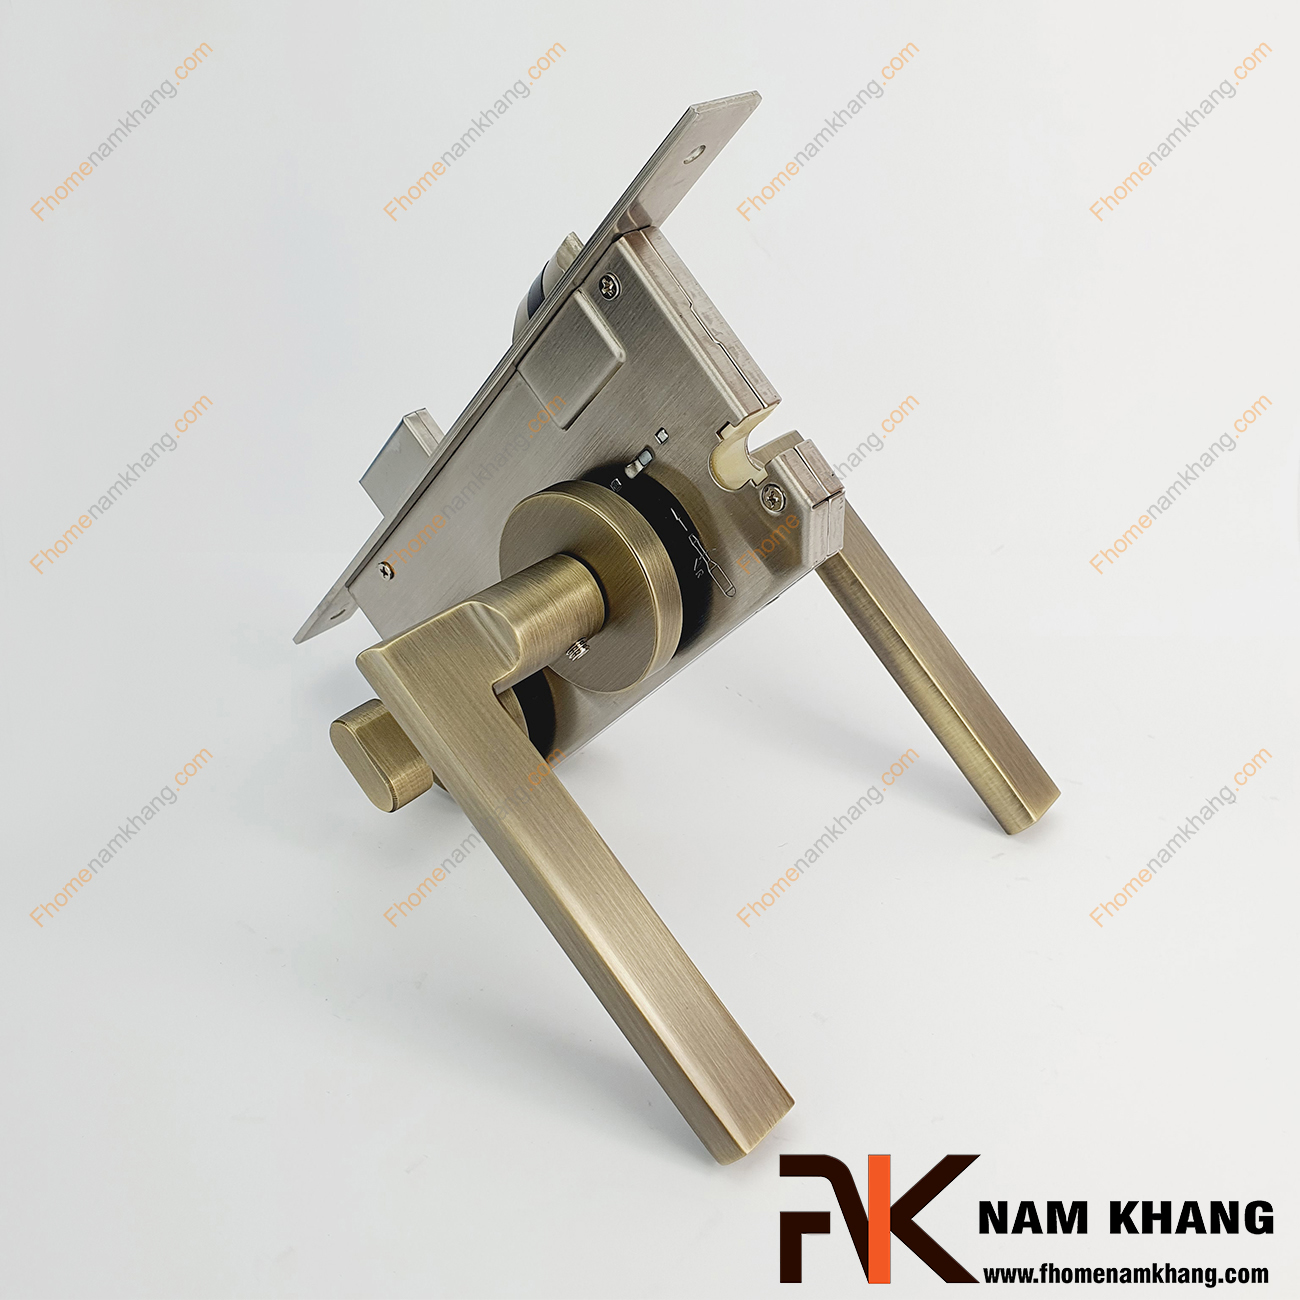 Khóa cửa phân thể hợp kim màu đồng rêu NK571-RX có thiết kế phần ốp khóa và tay gạt riêng biệt, khá nhỏ gọn và tạo được sự nổi bật độc đáo của một dòng khóa cửa.